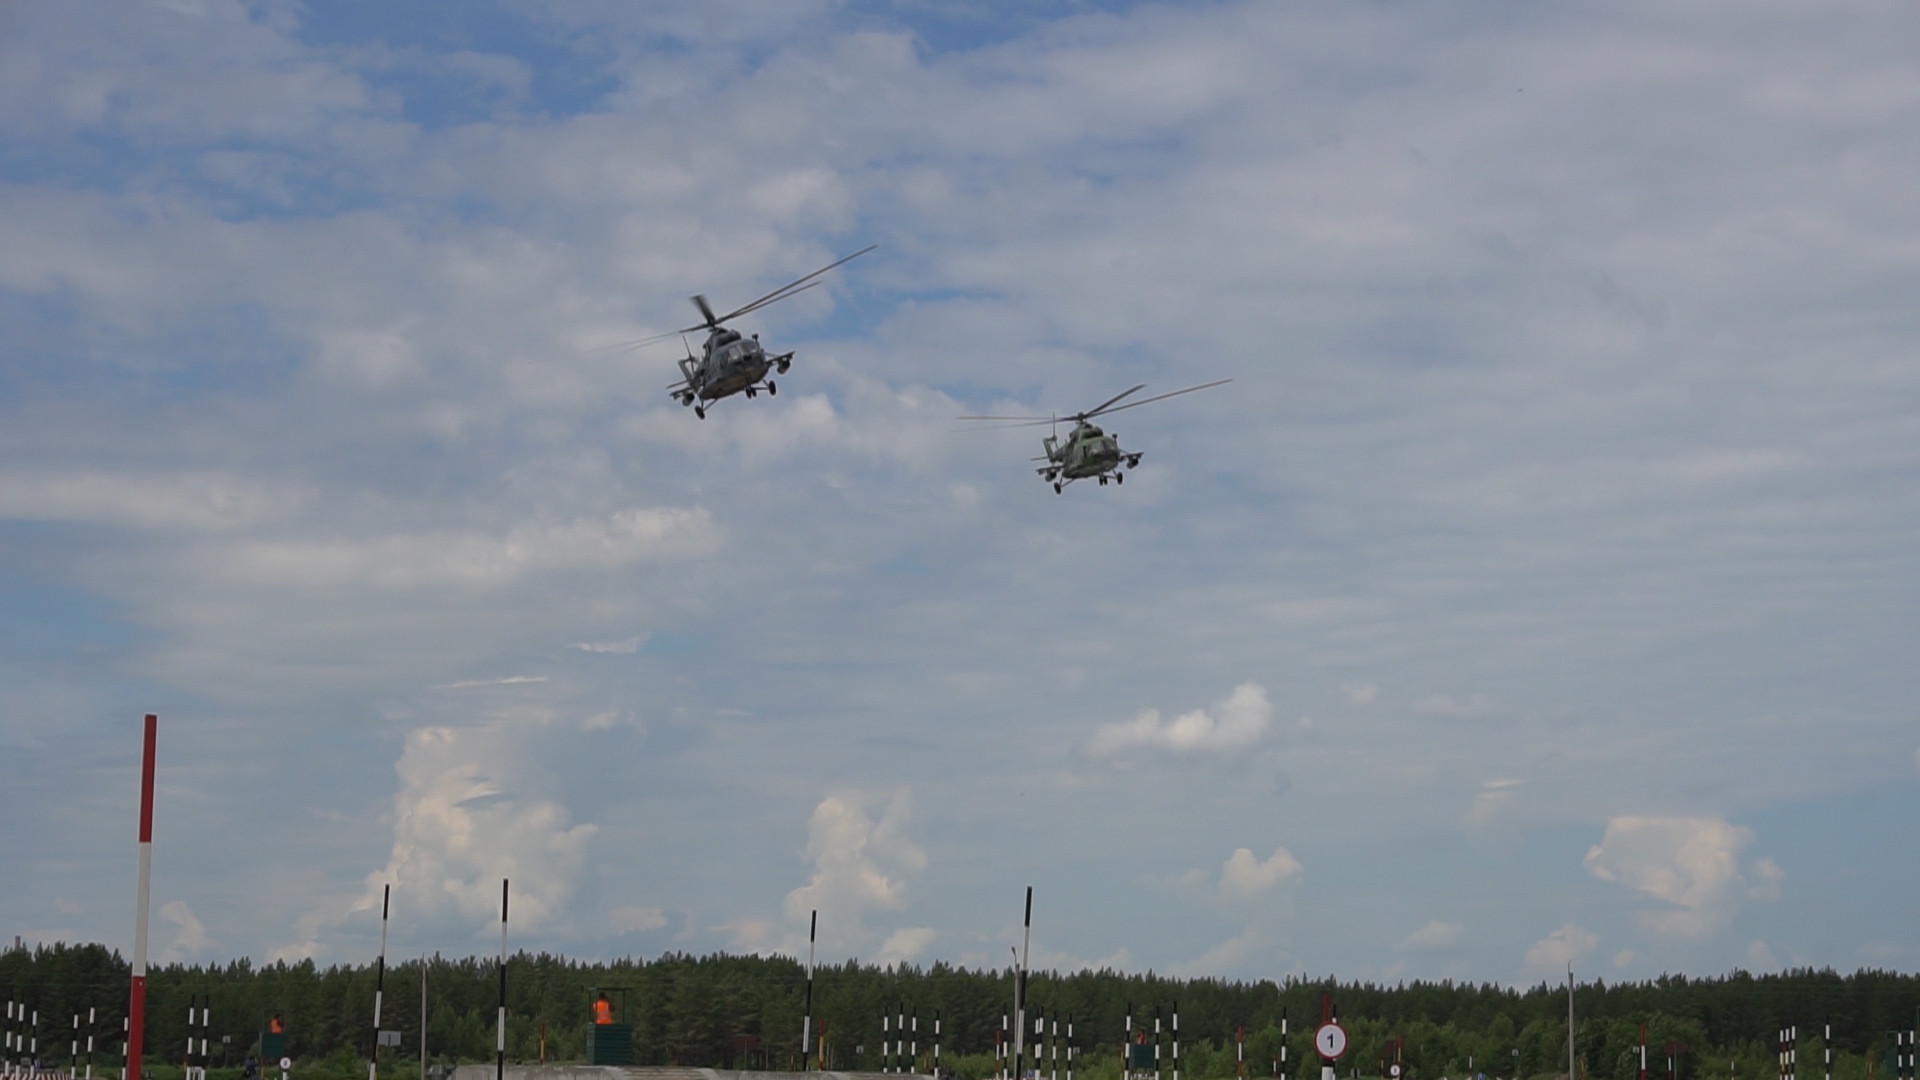 Вертолеты кружили над полигоном и «минировали» участок местности, создавая помехи саперам